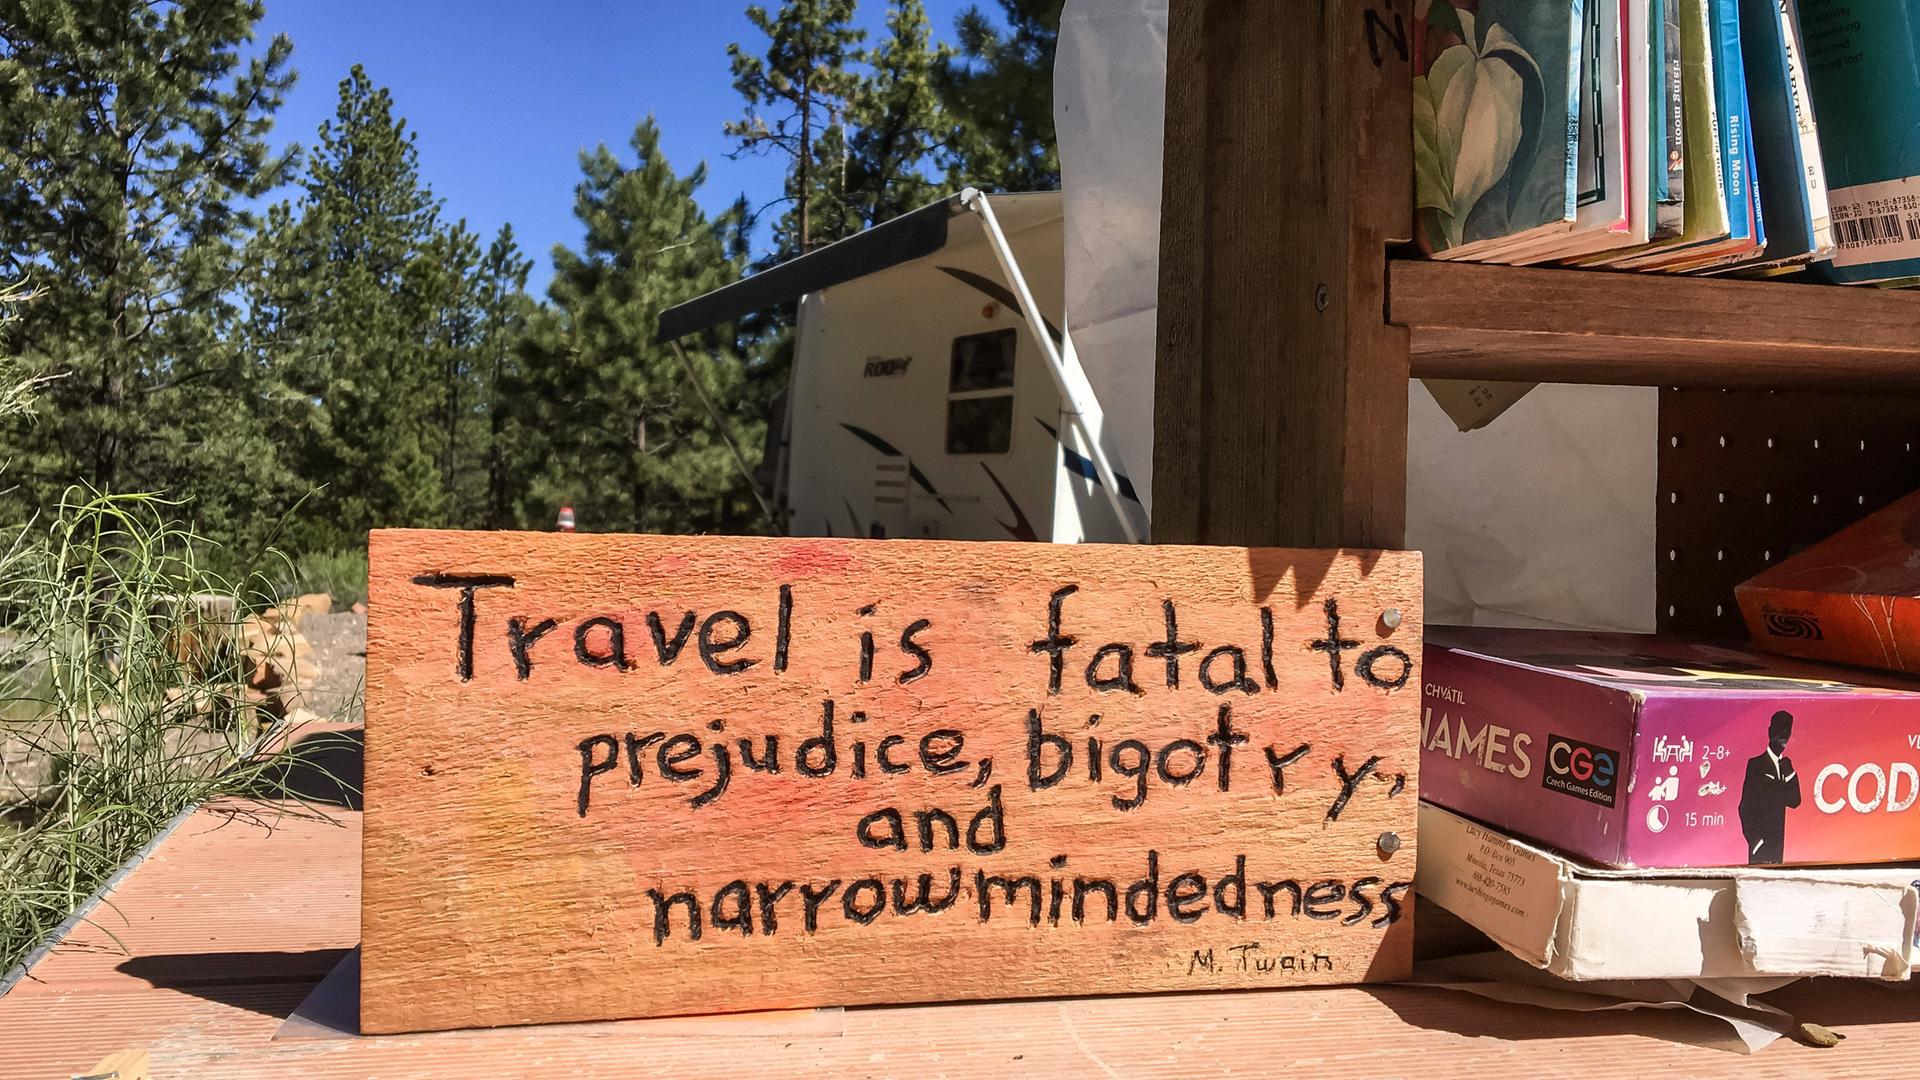 An der Rezeption eines staatlichen Campinplatz im Bryce Canyon, Utah, können Reisende Bücher, Kleidung, Feuerholz, Campingbedarf und Essen abgeben, welches sie nicht mehr brauchen, andere Reisende aber benötigen könnten. Die Campinplatzleitung hat daneben ein Schild mit einem Zitat des Schriftstellers Mark Twain "Reisen ist fatal für Vorurteile, Bigotterie und Engstirnigkeit" (engl.) aufgestellt.